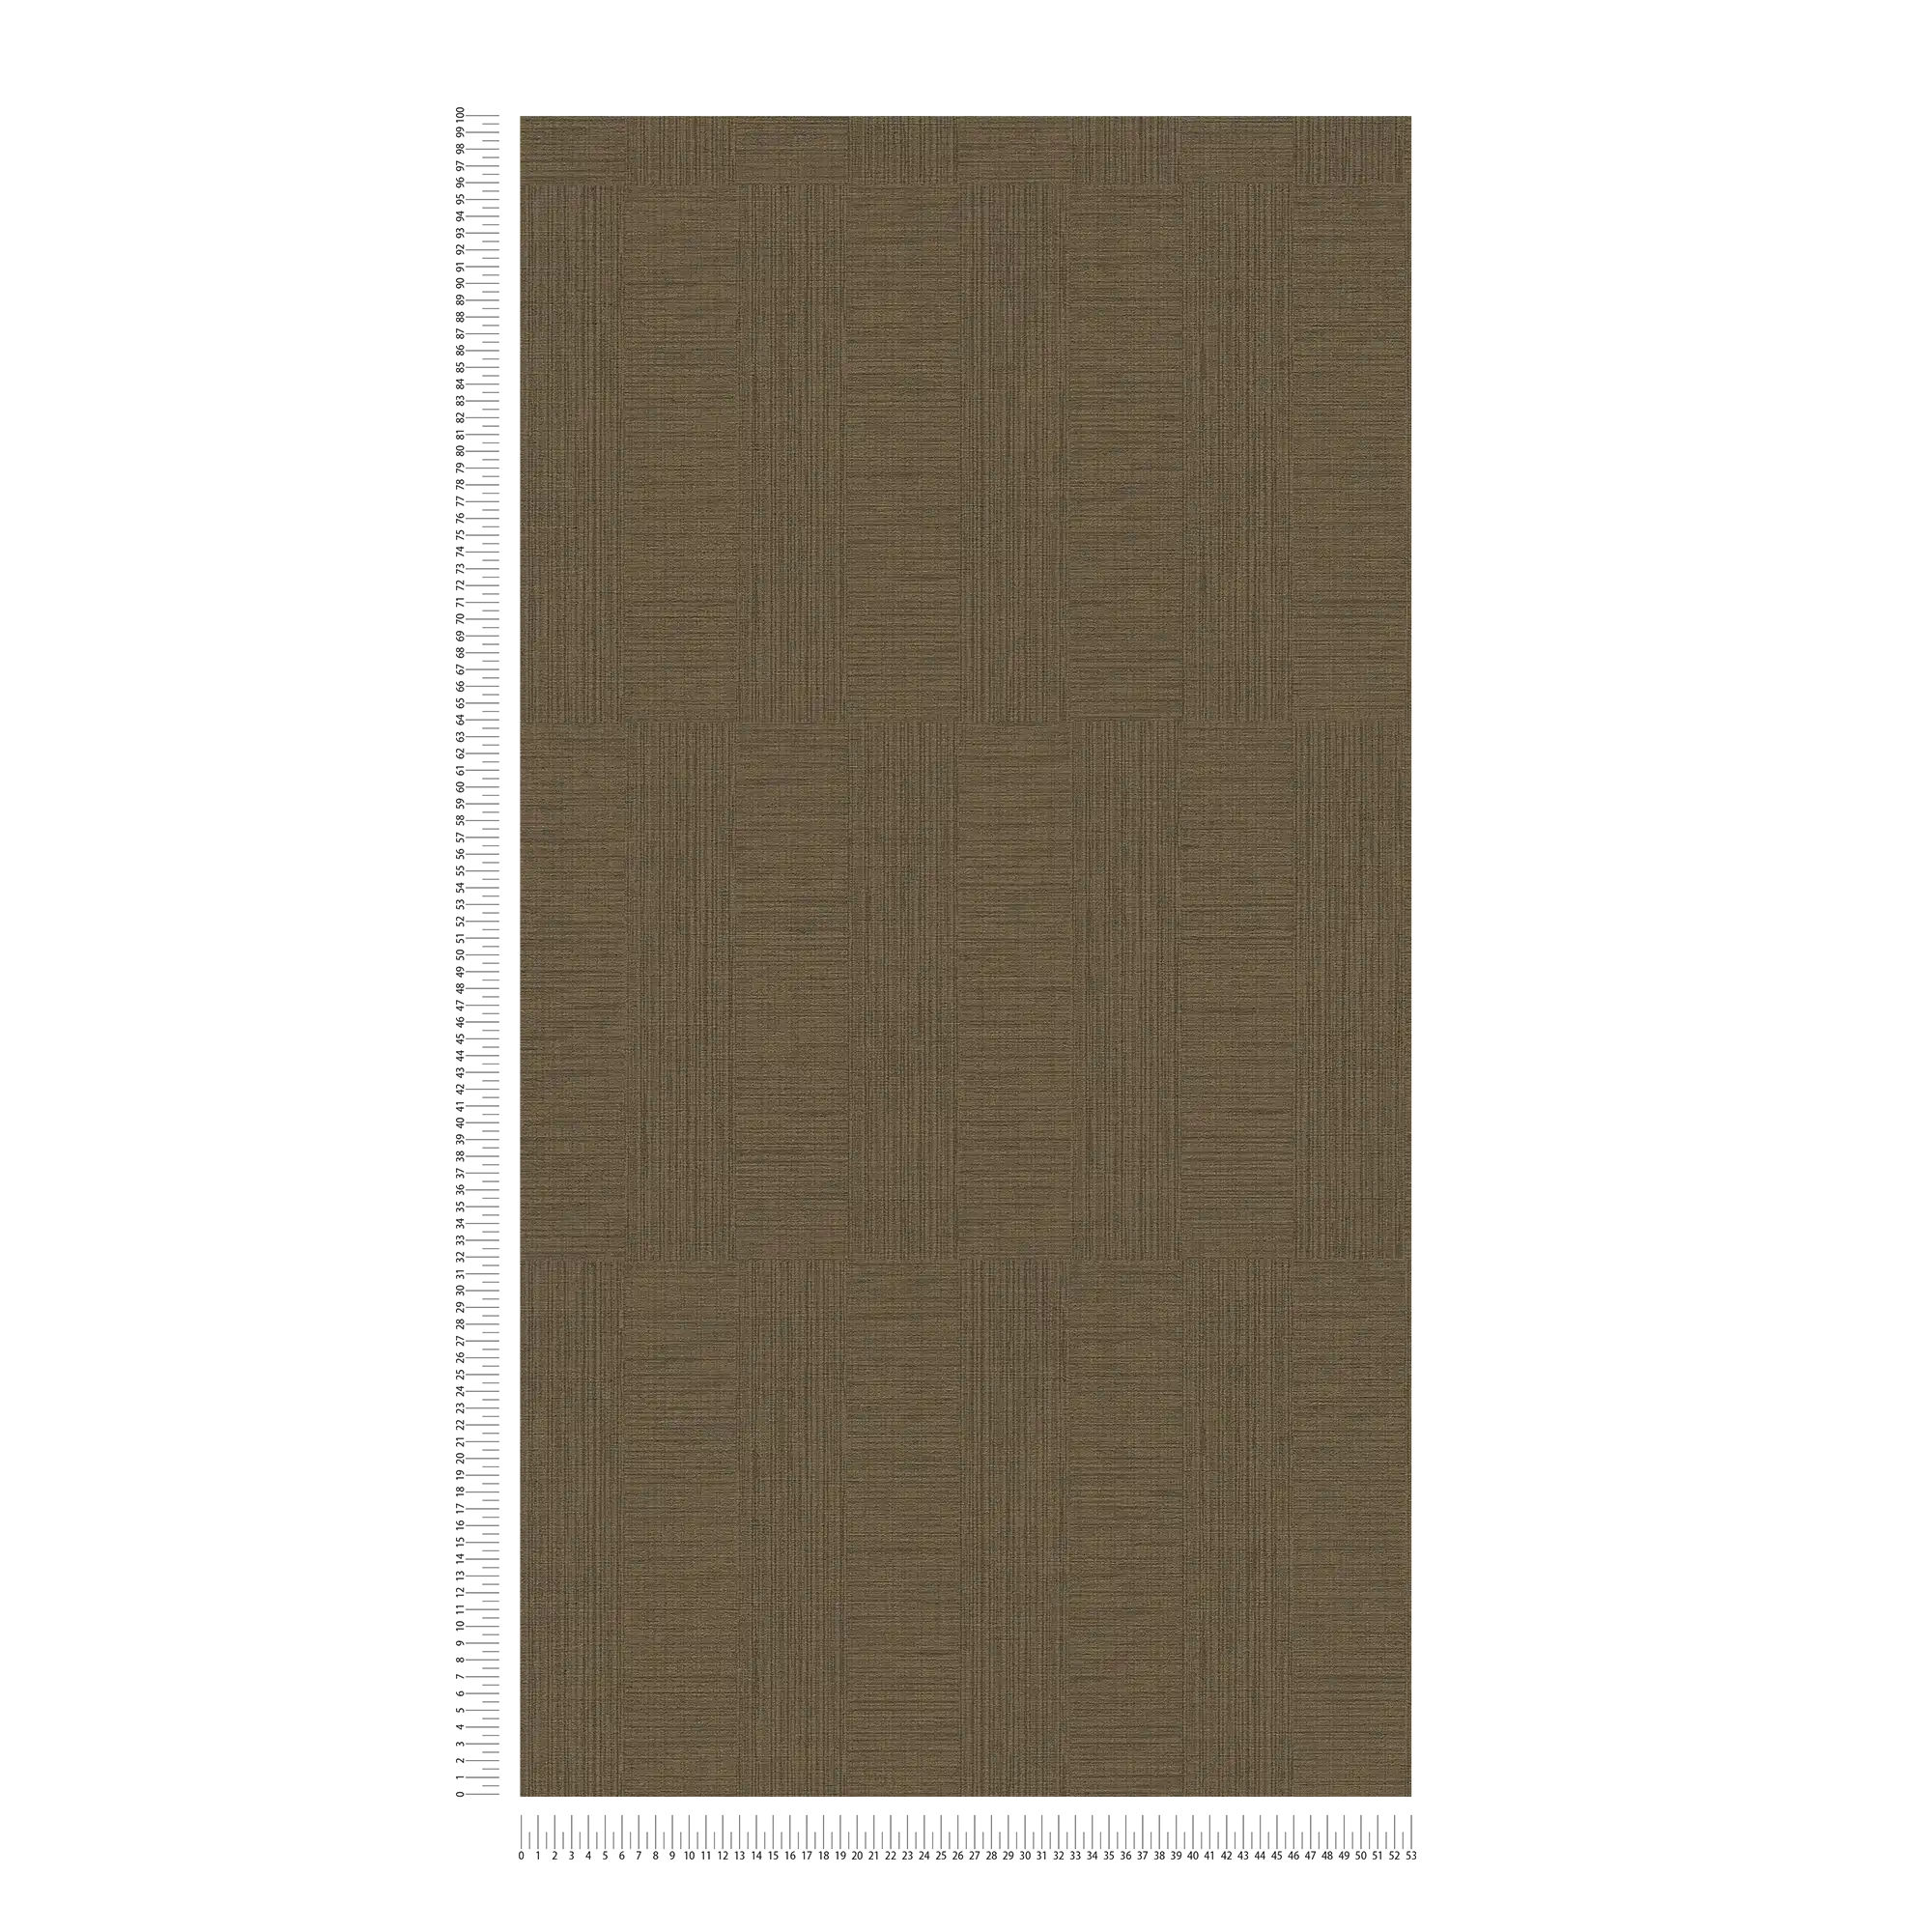             papel pintado moteado con motivos rectangulares en estilo retro - marrón
        